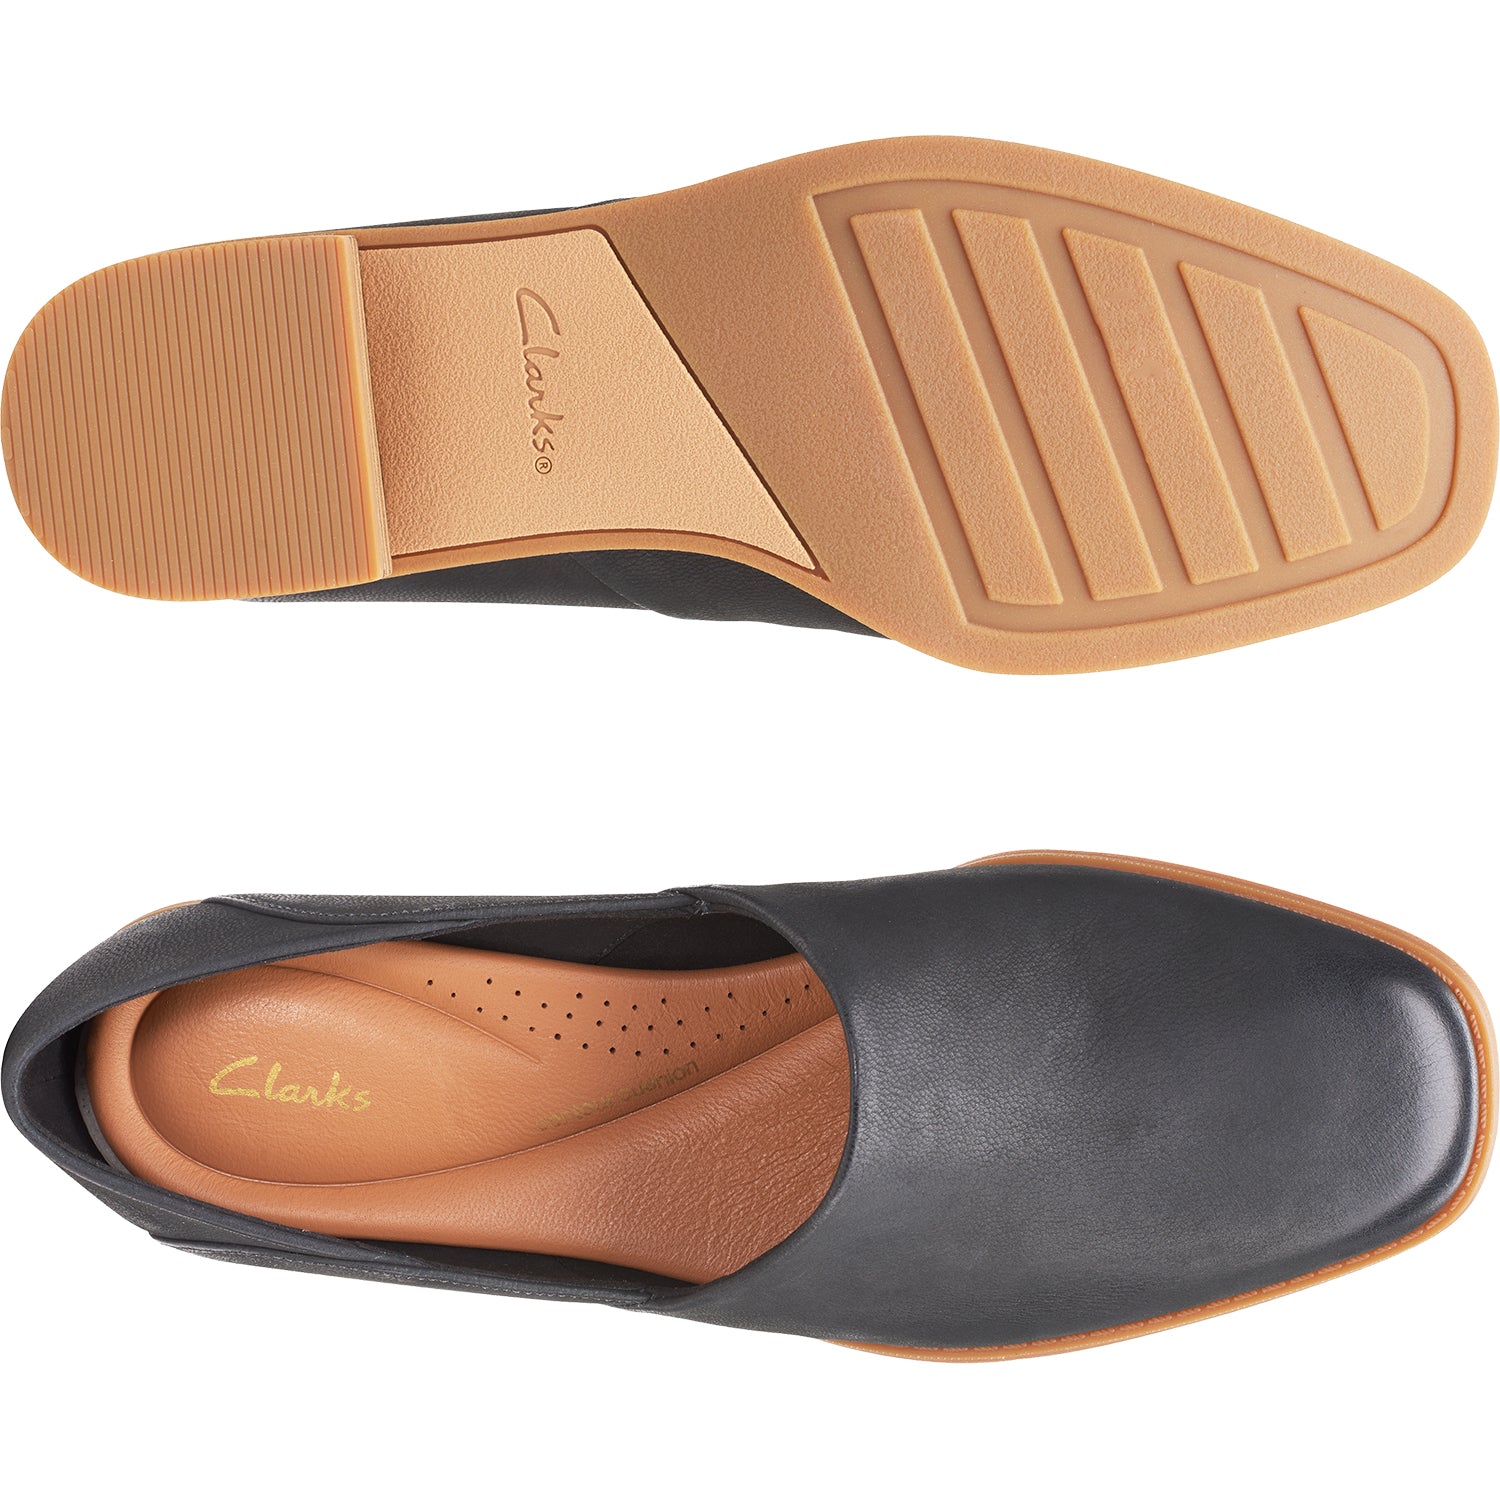 Clarks Pure Belle | Women's Slip-On Shoes | Footwear etc.